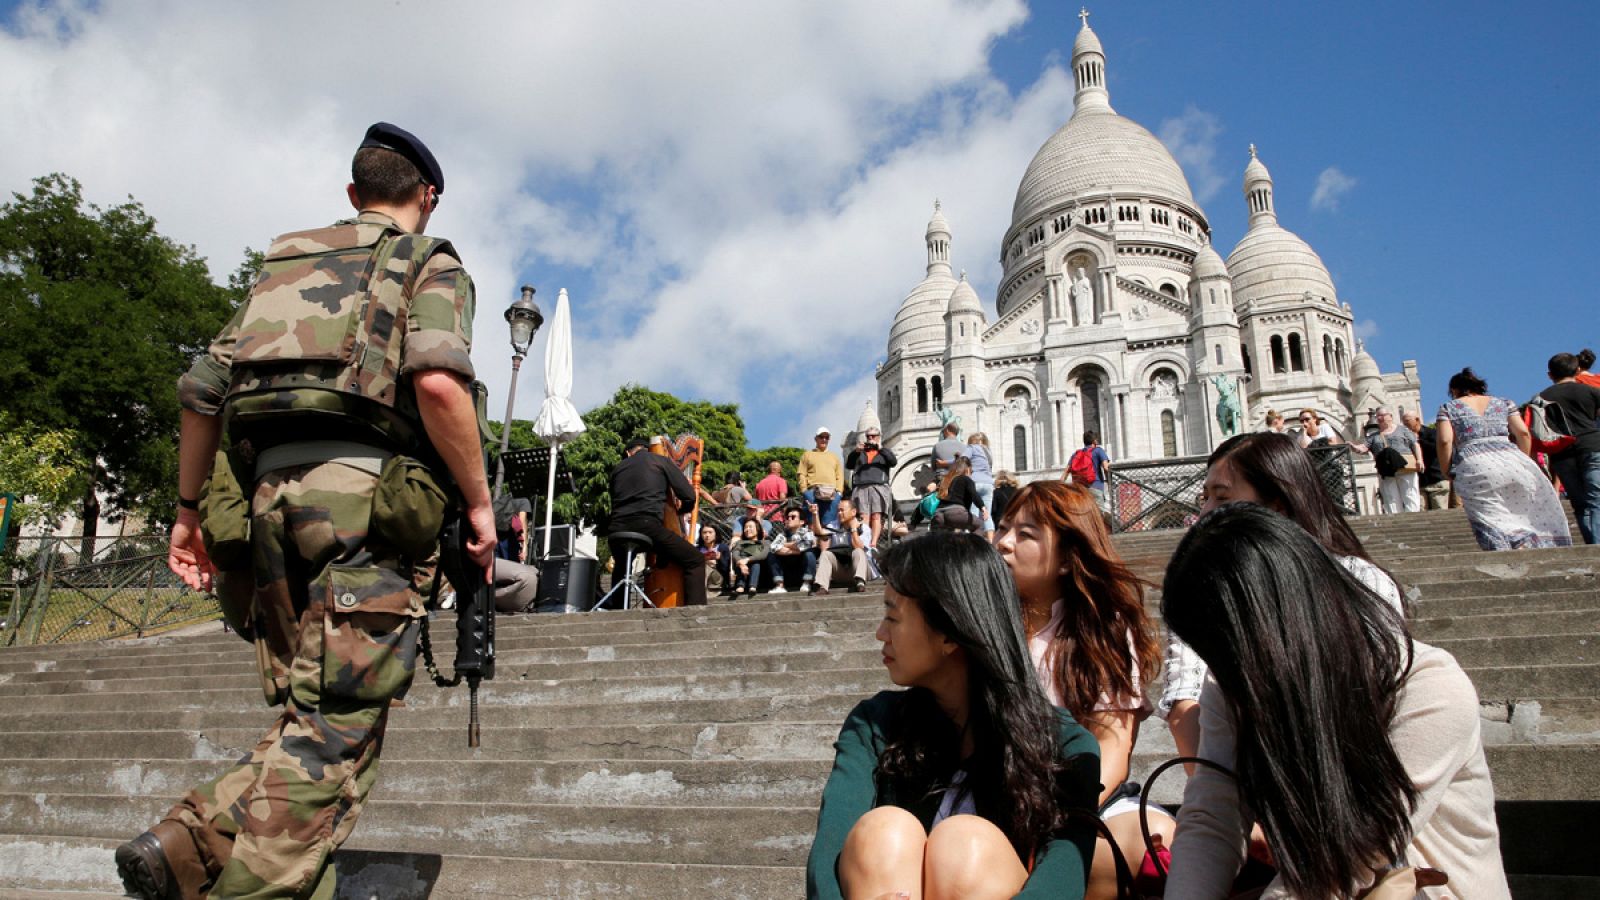 Un soldado patrulla en la basílica del Sagrado Corazón de Montmartre, París, bajo la curiosa mirada de un grupo de turistas coreanas